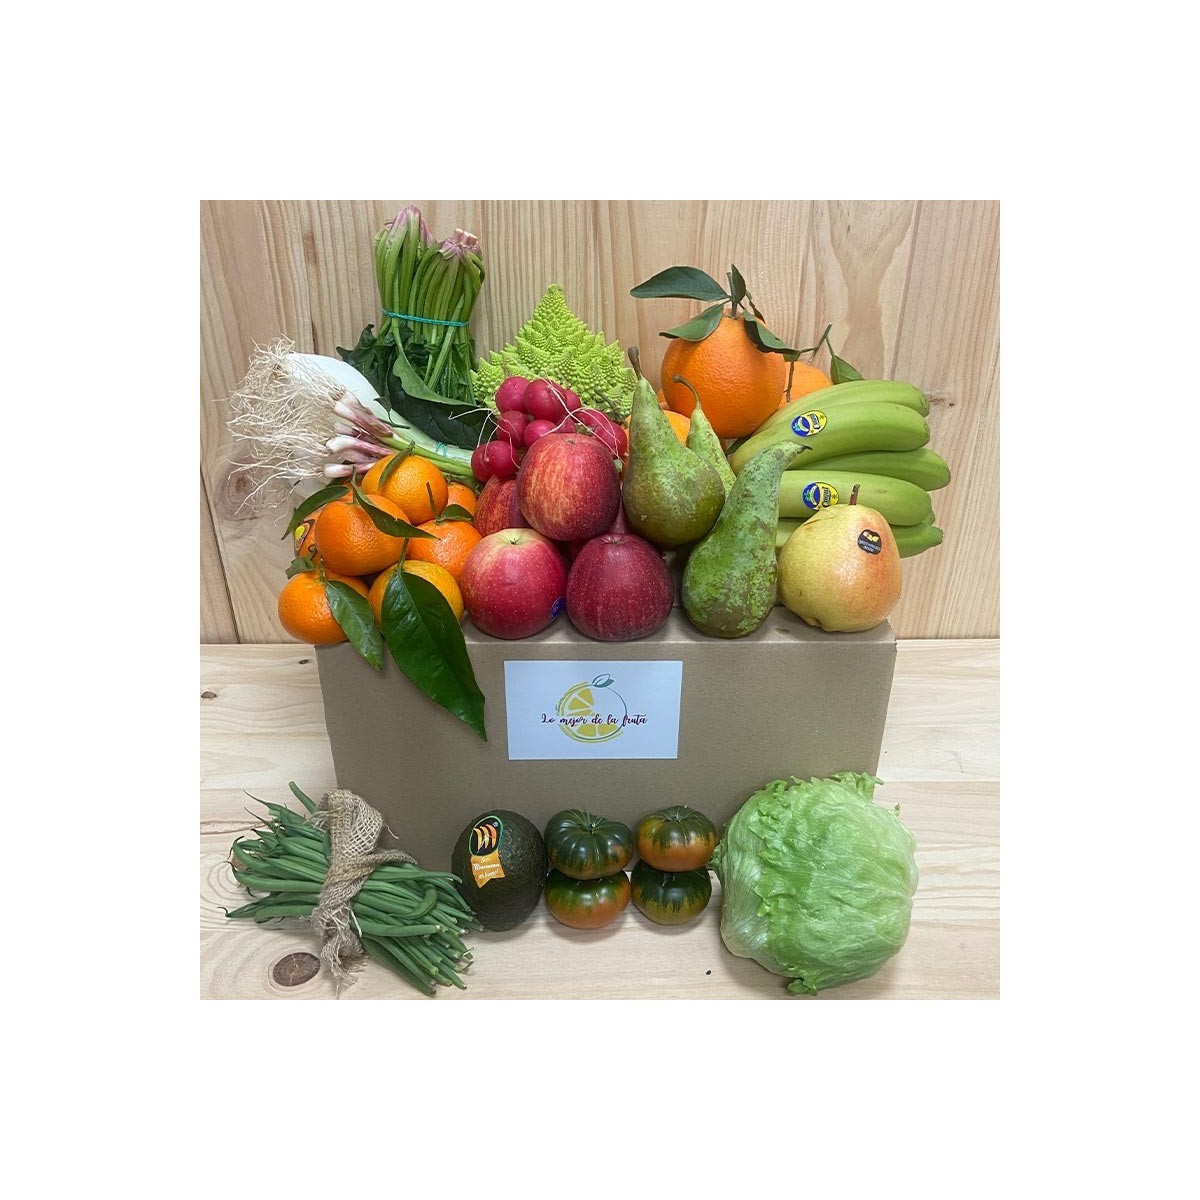 Pack Frutas y Verduras - - Packs Frutas y Verduras -1- Lo mejor de la fruta